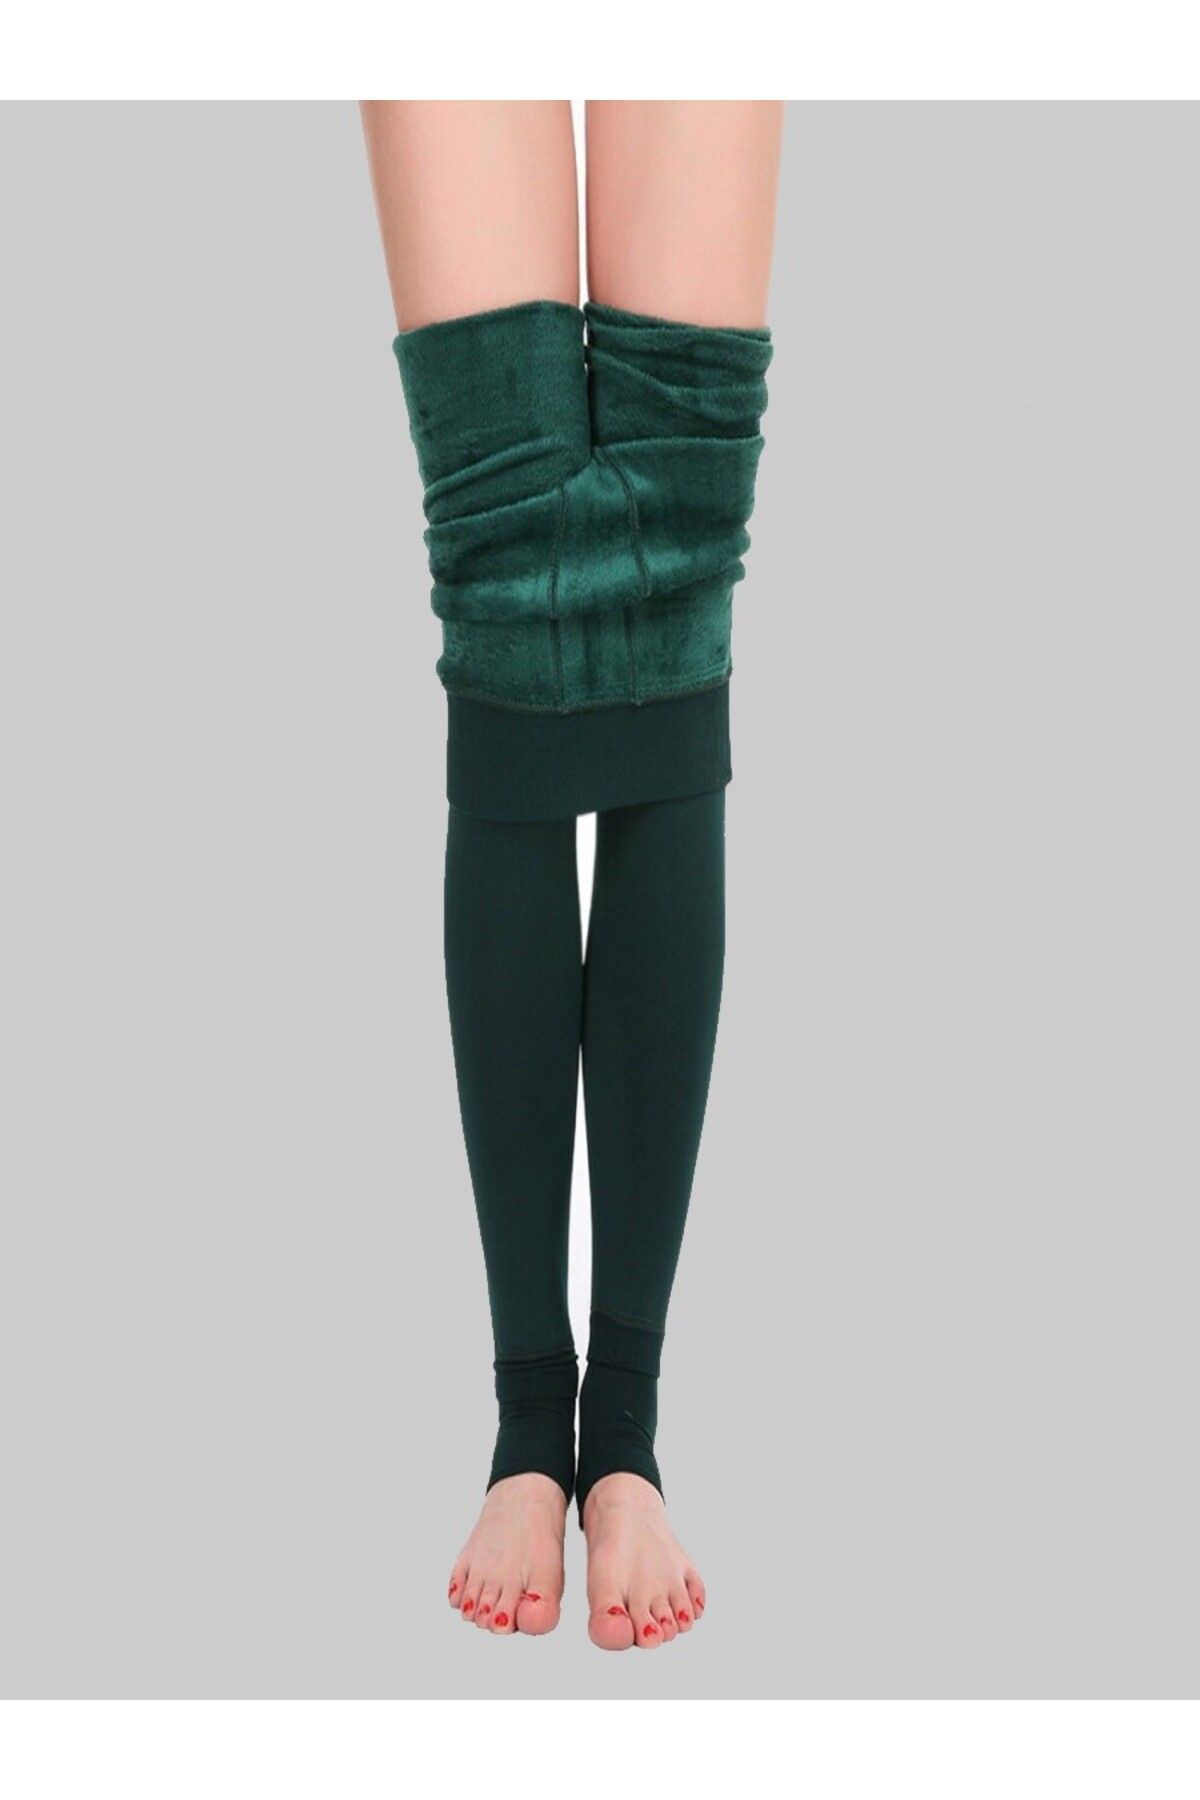 MİSTİRİK Ravena Model Sıcak Tutan Sıkılaştıran Tüylü Pelüşlü Dokuma Külotlu Çorap Yeşil Renk